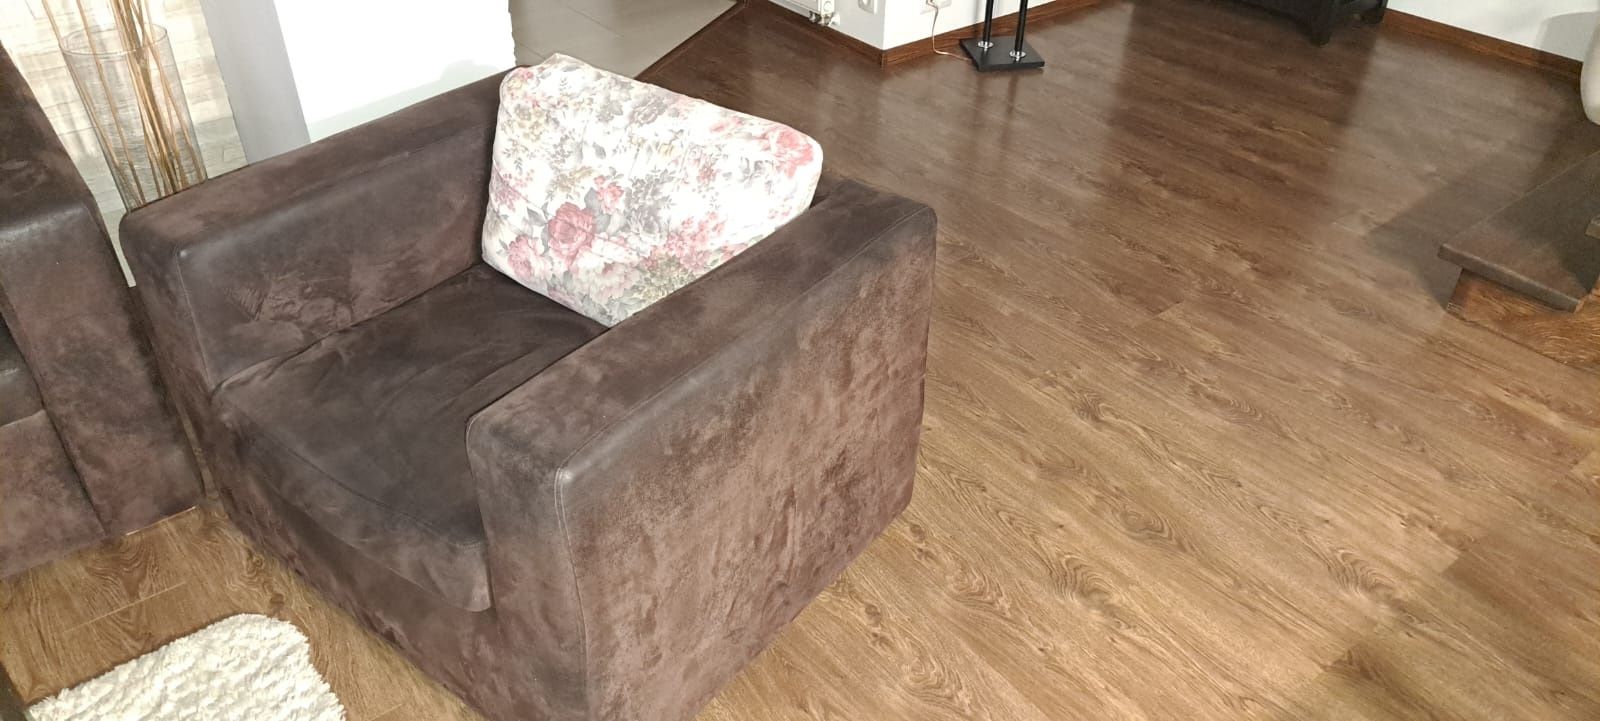 Sofa z fotelem kanapa fotel